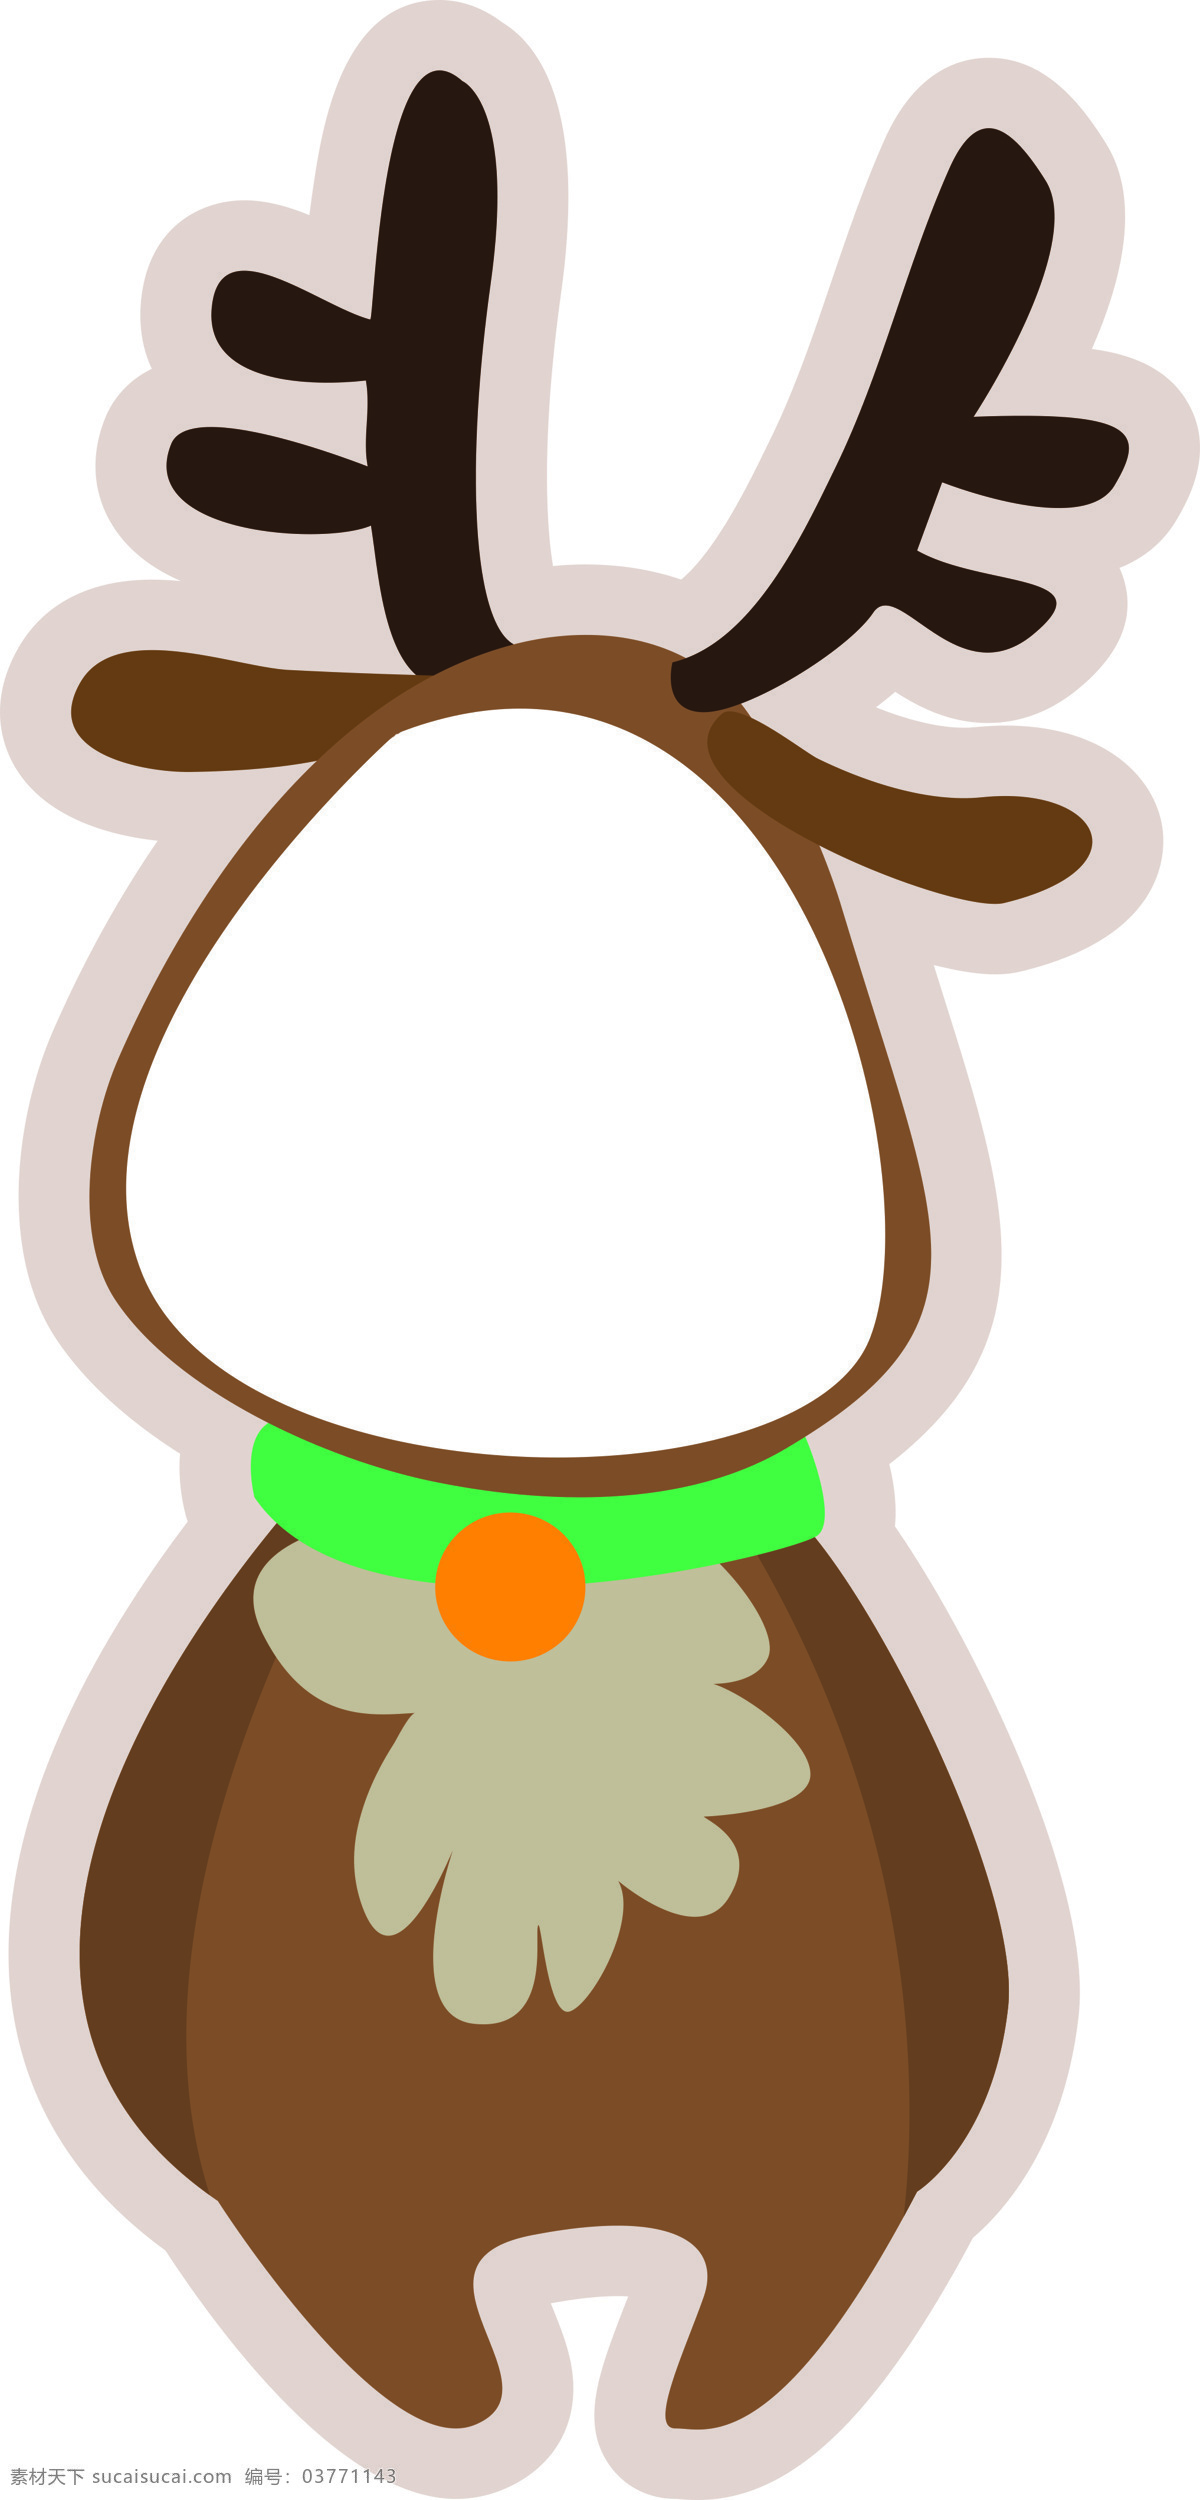 麋鹿 kt板 造型牌 面部挖空 圣诞节 动漫动画 动漫人物